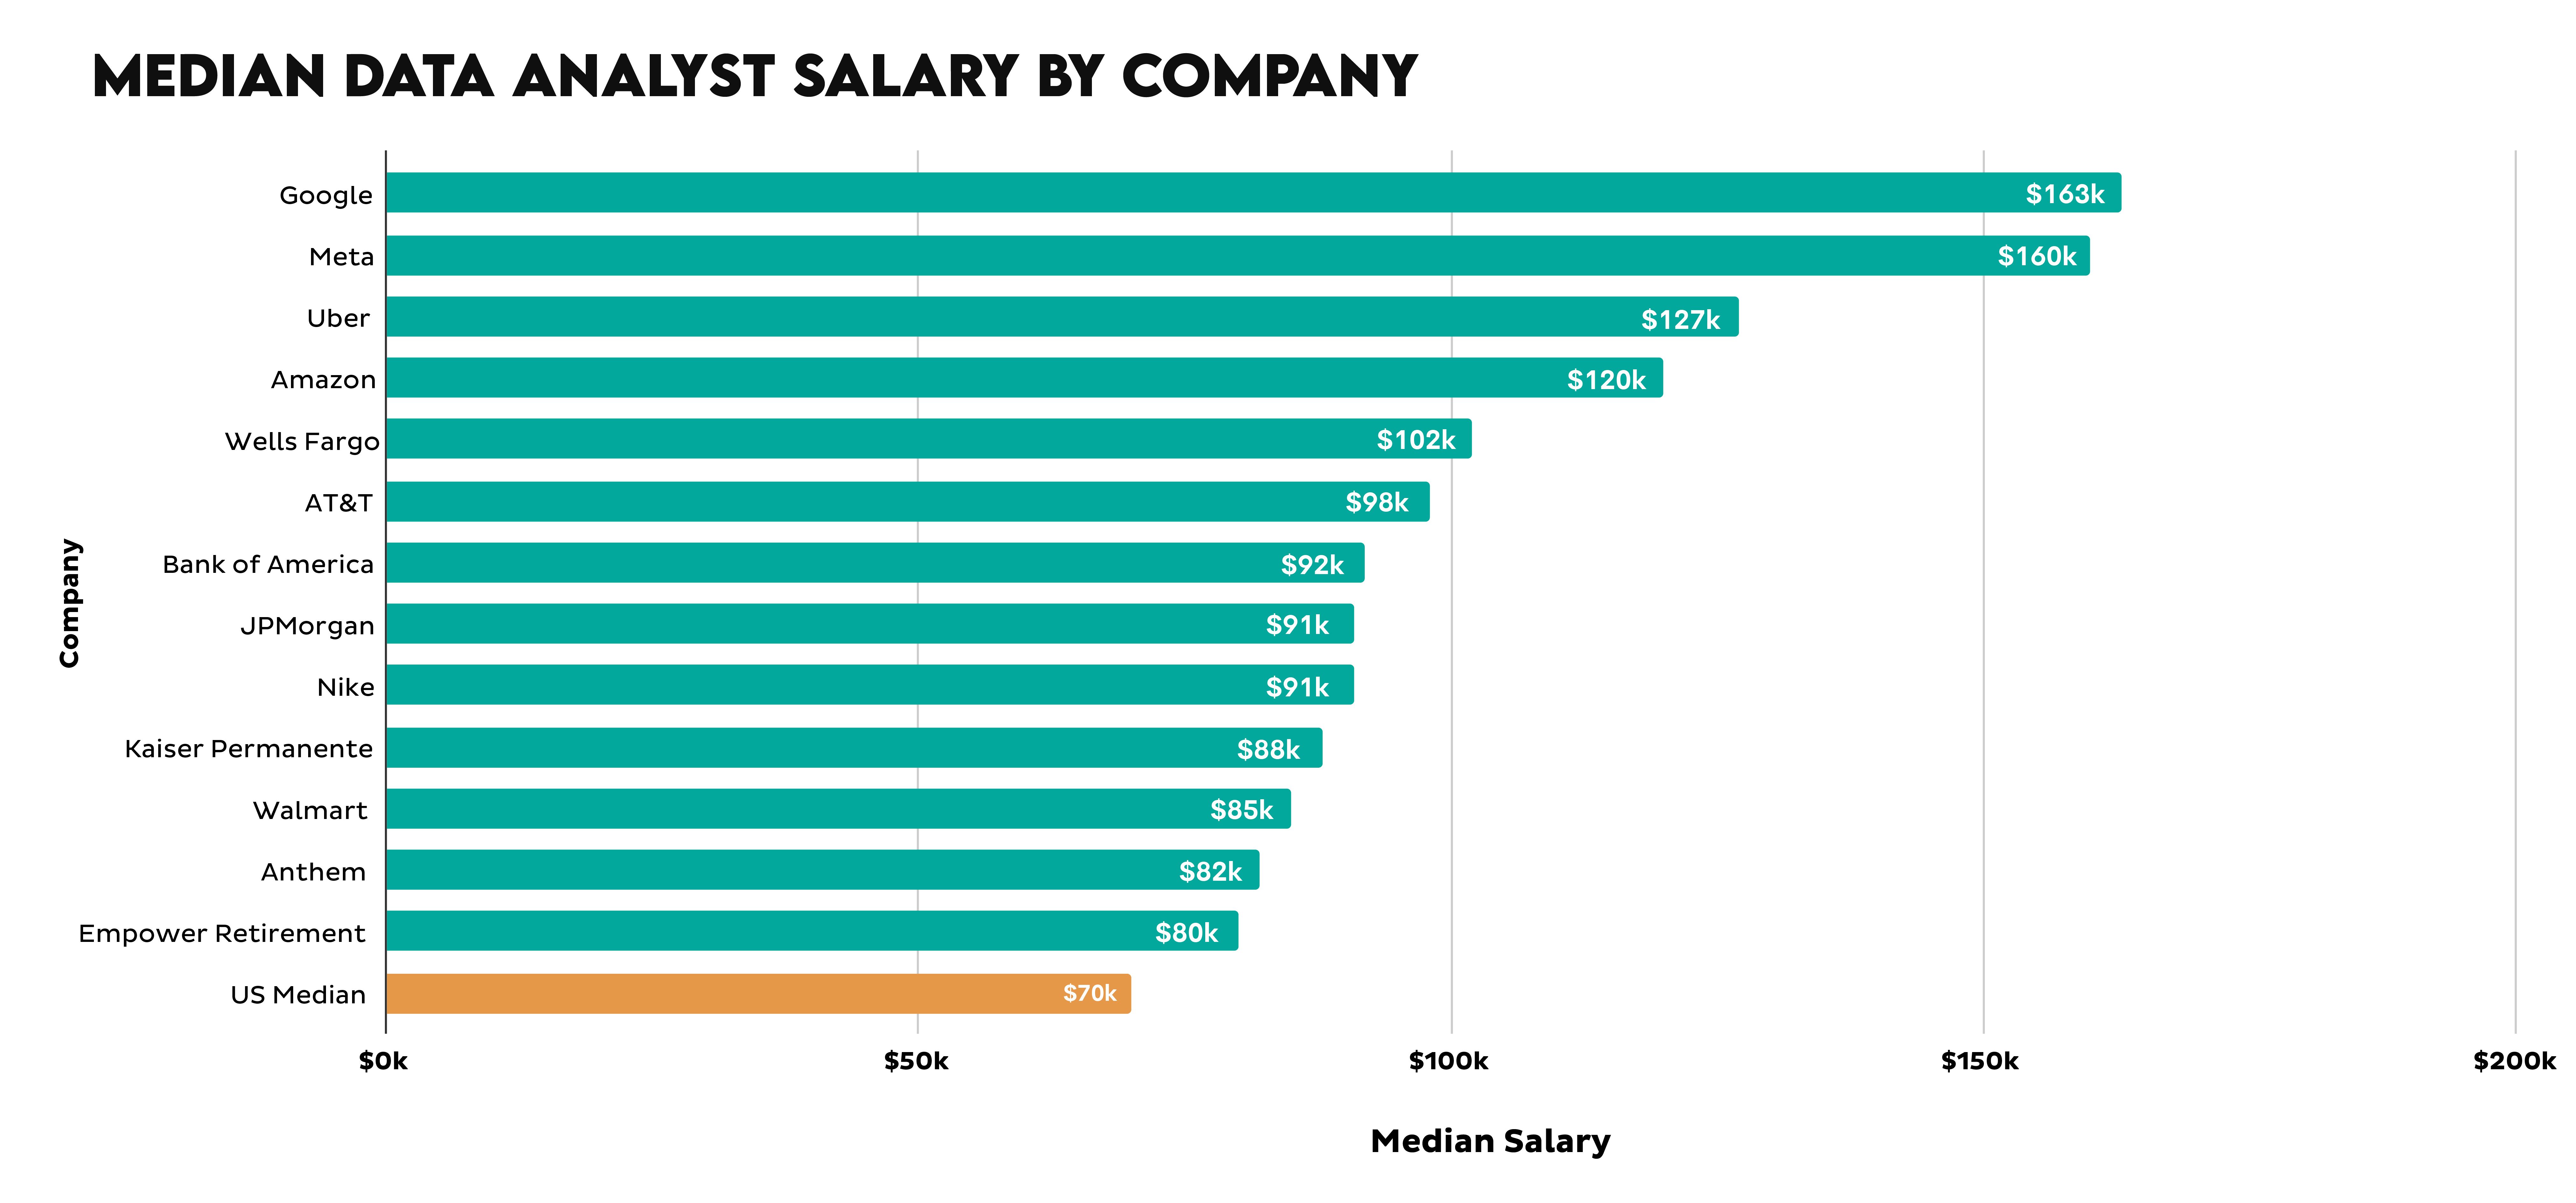 Median Data Analyst Salary by Company